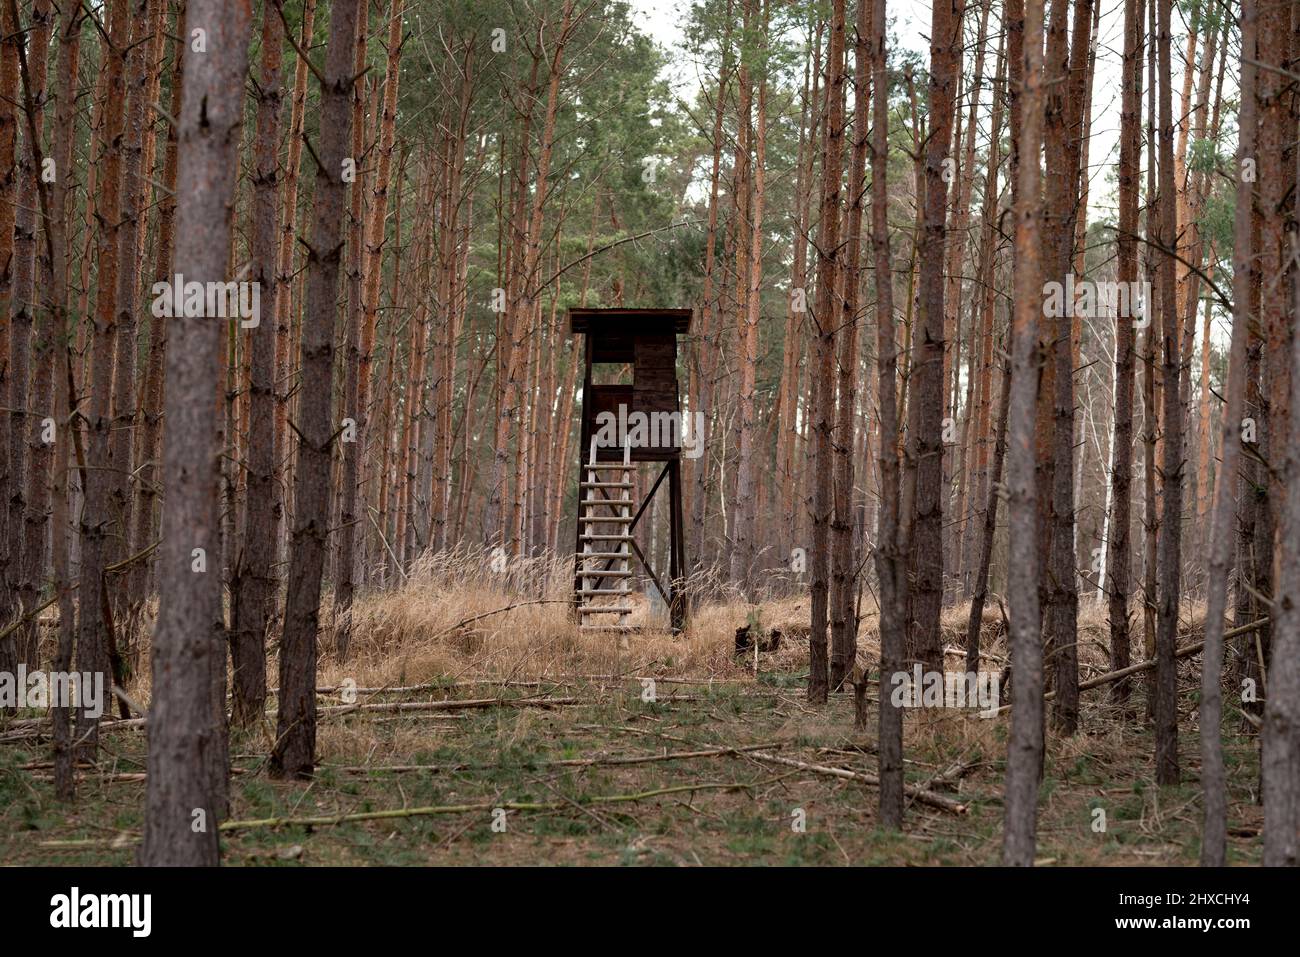 Siège haut en bois caché pour un chasseur dans une forêt, faible profondeur de champ, bokeh mou Banque D'Images